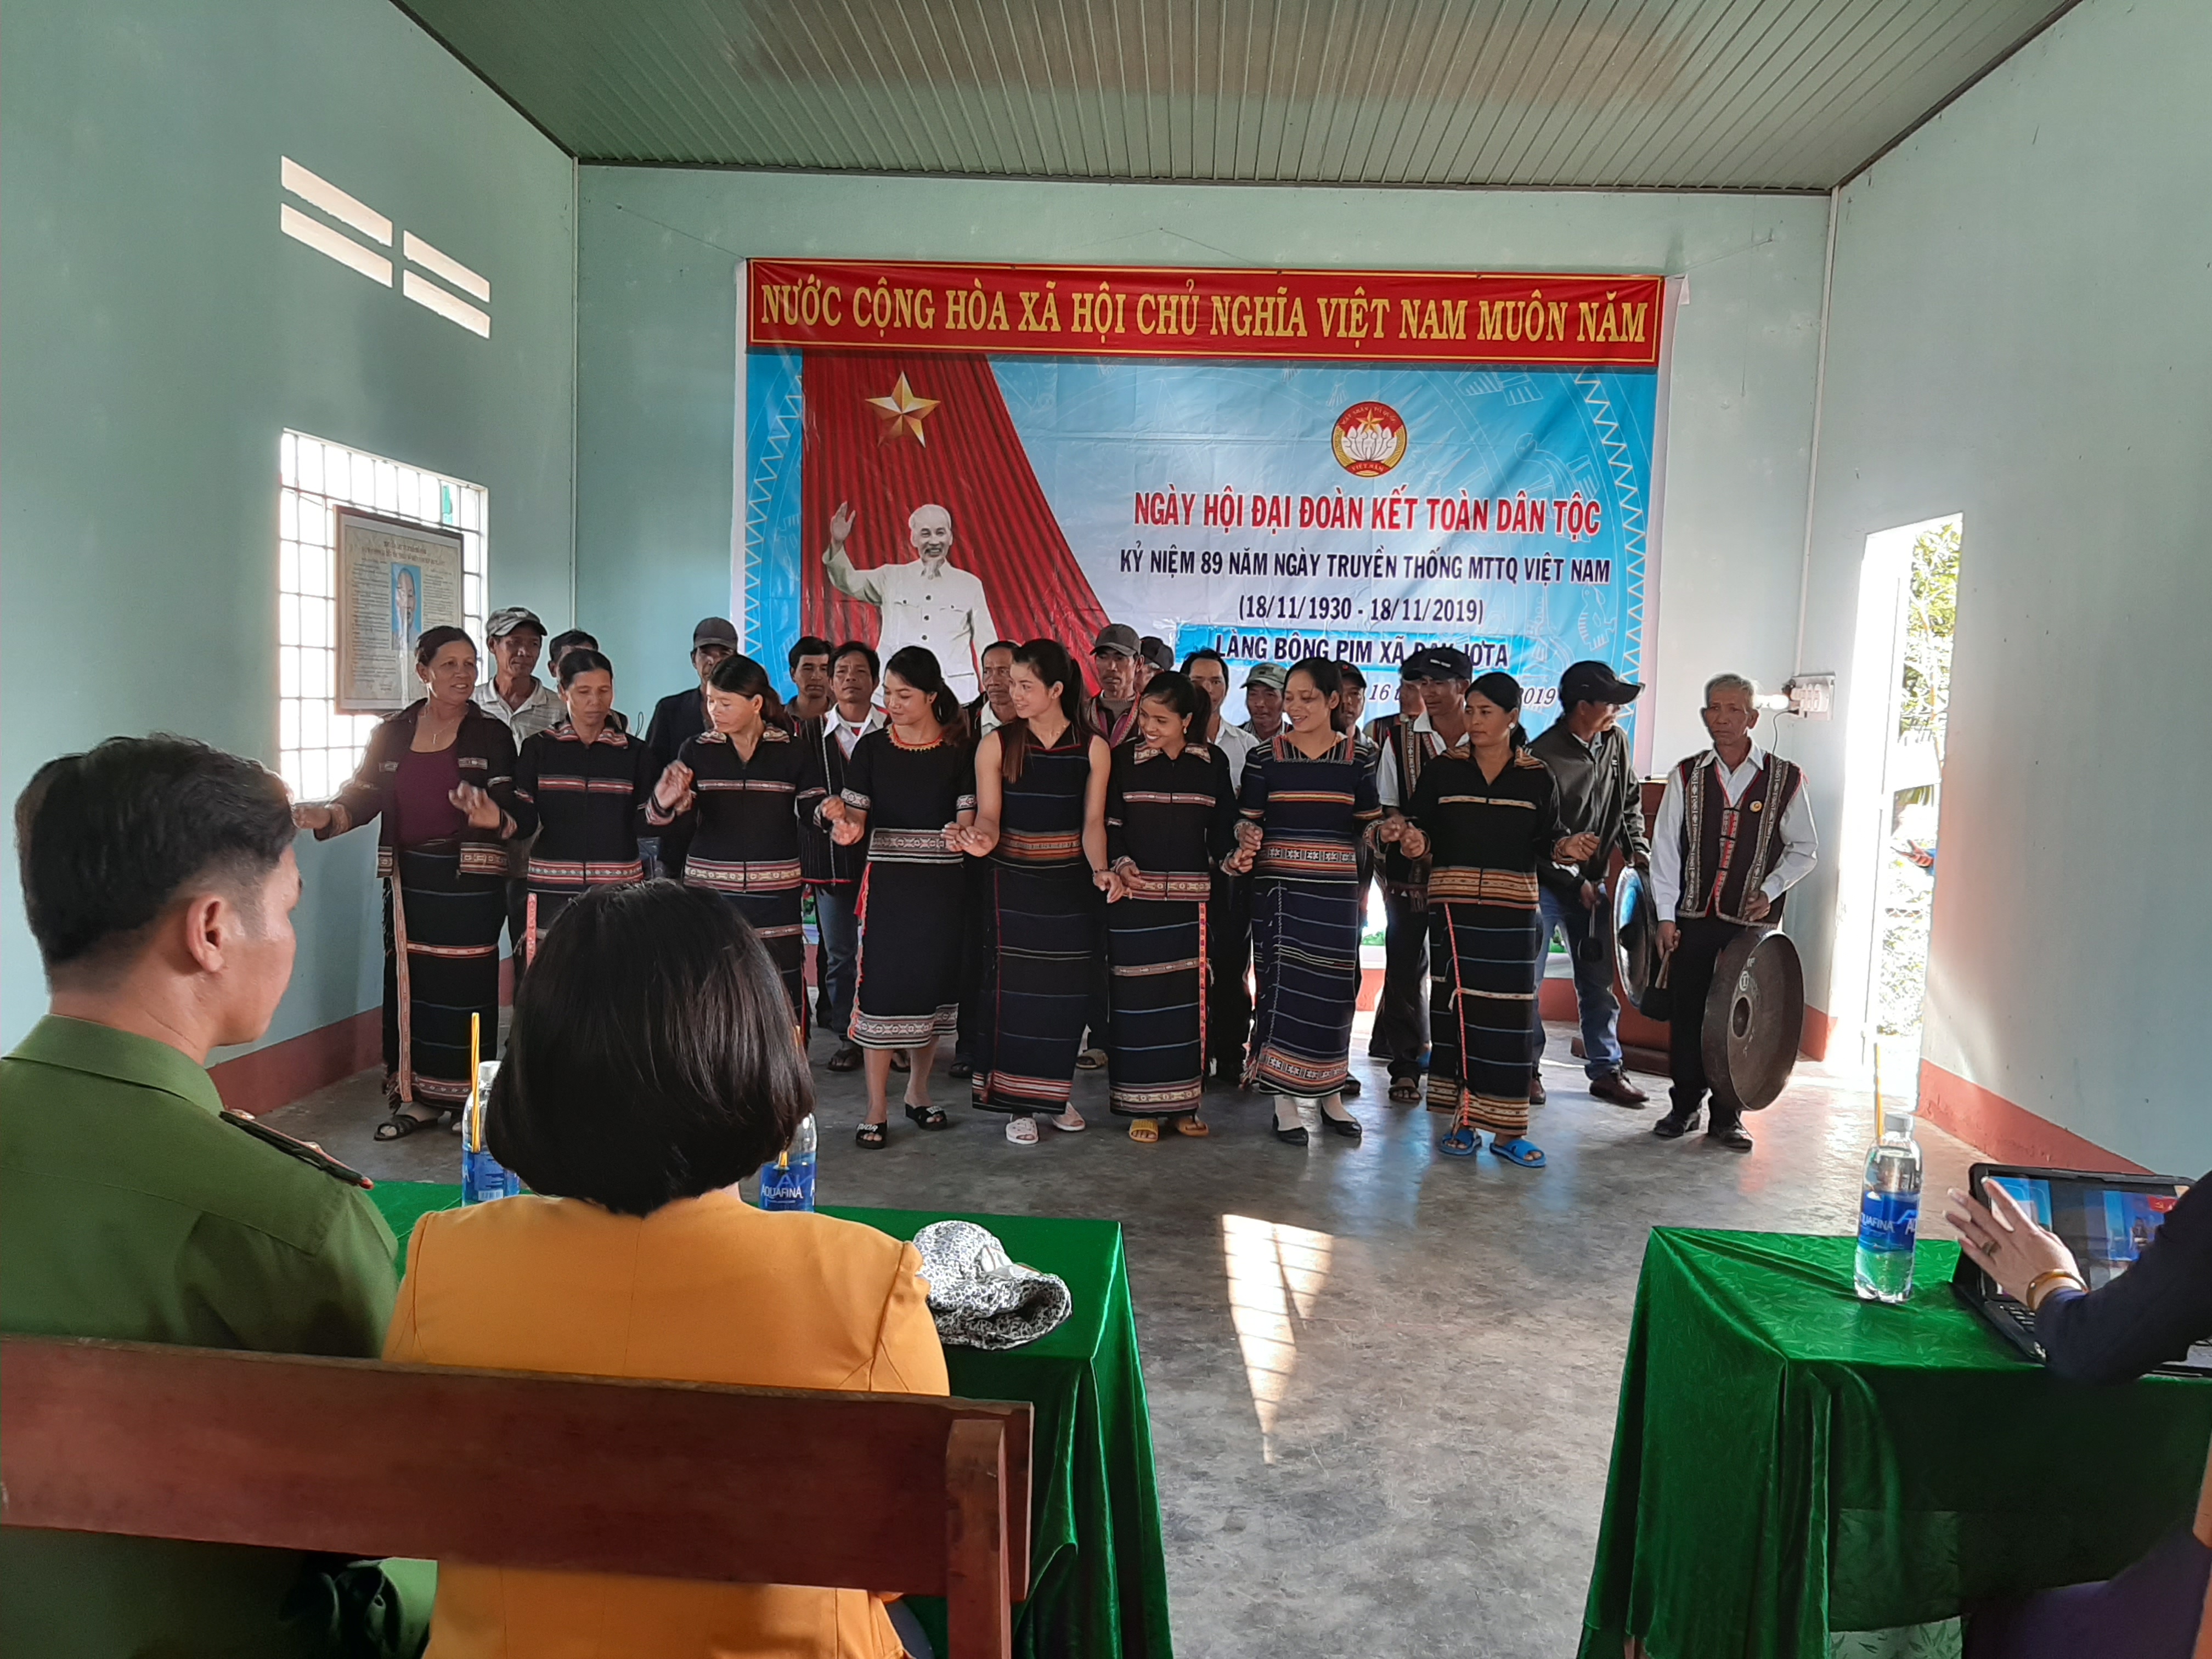 Làng Bông Pim, xã Đak JơTa tổ chức ngày Đại đoàn kết toàn dân tộc